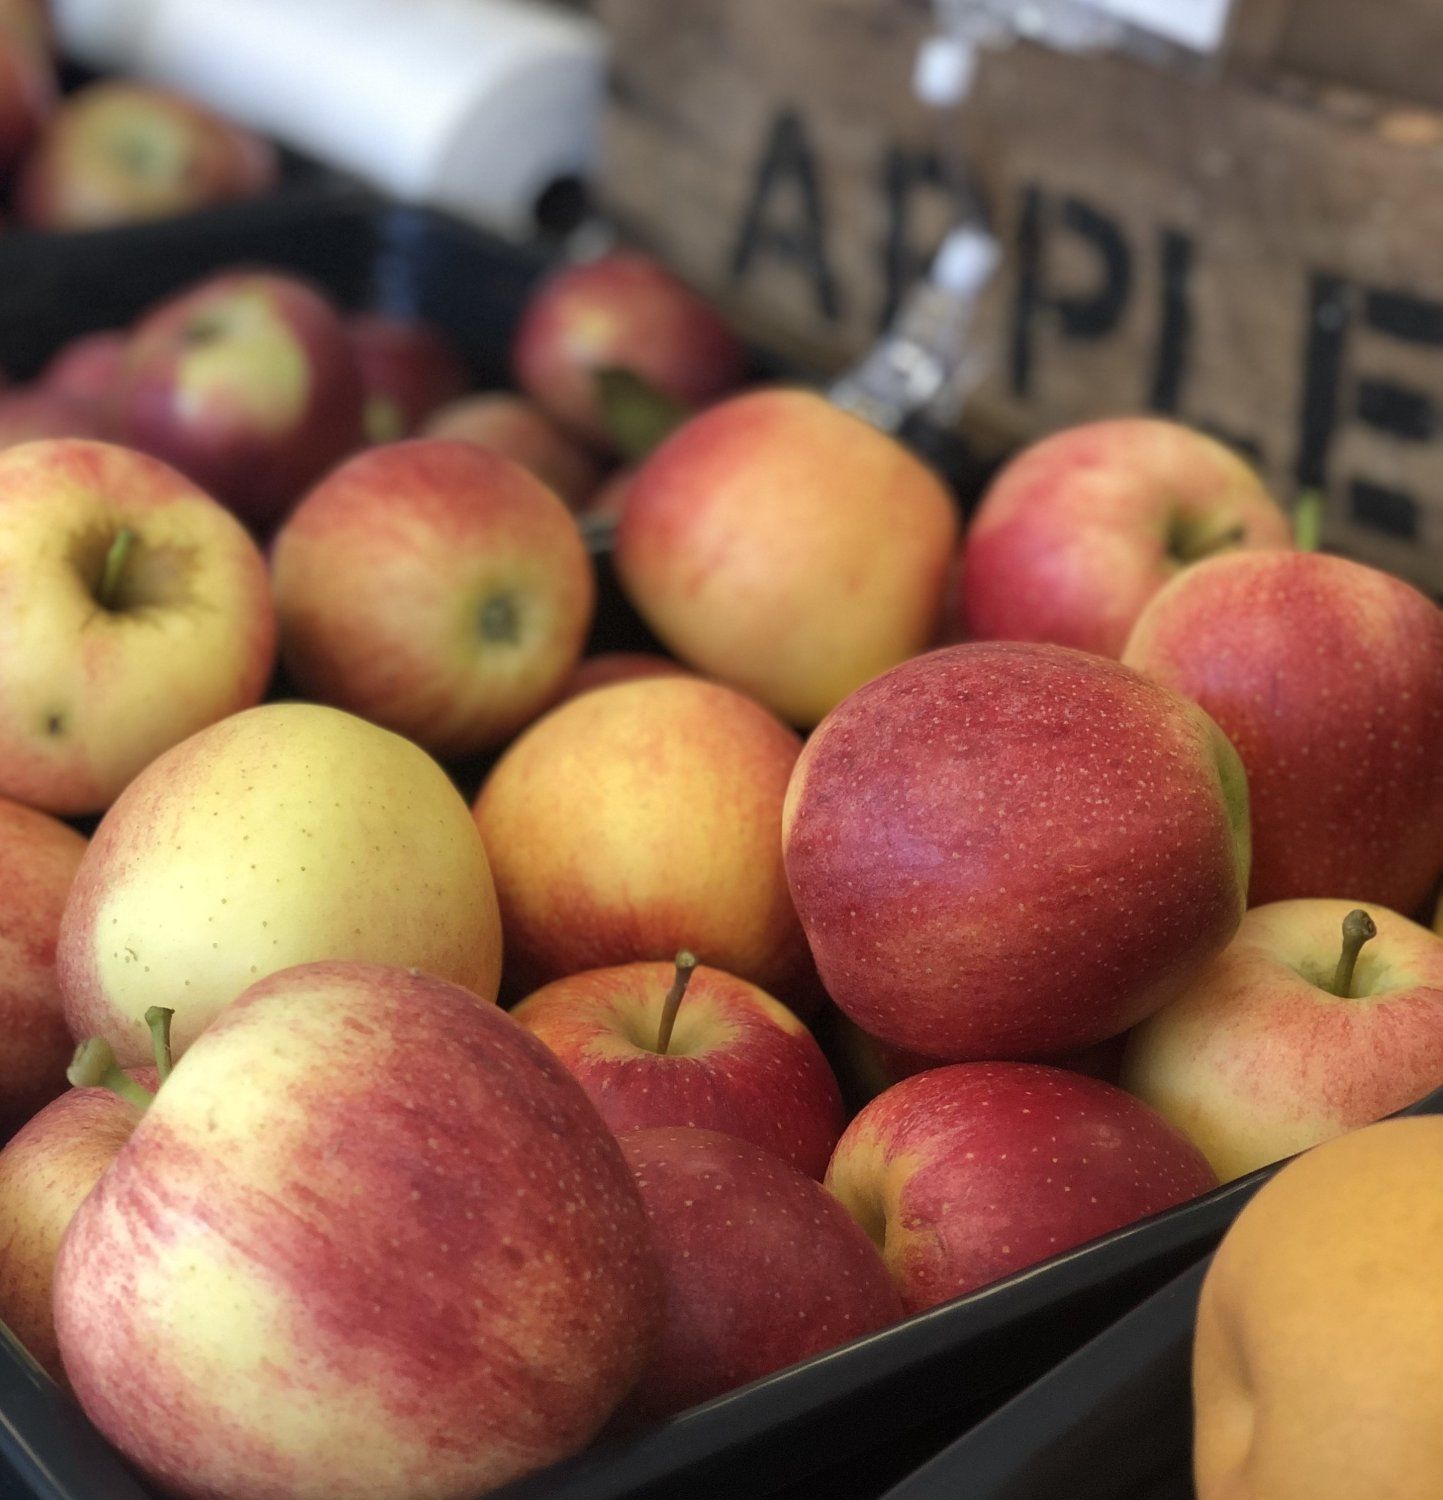 Next Happening: Summer Week 17: Early apples!